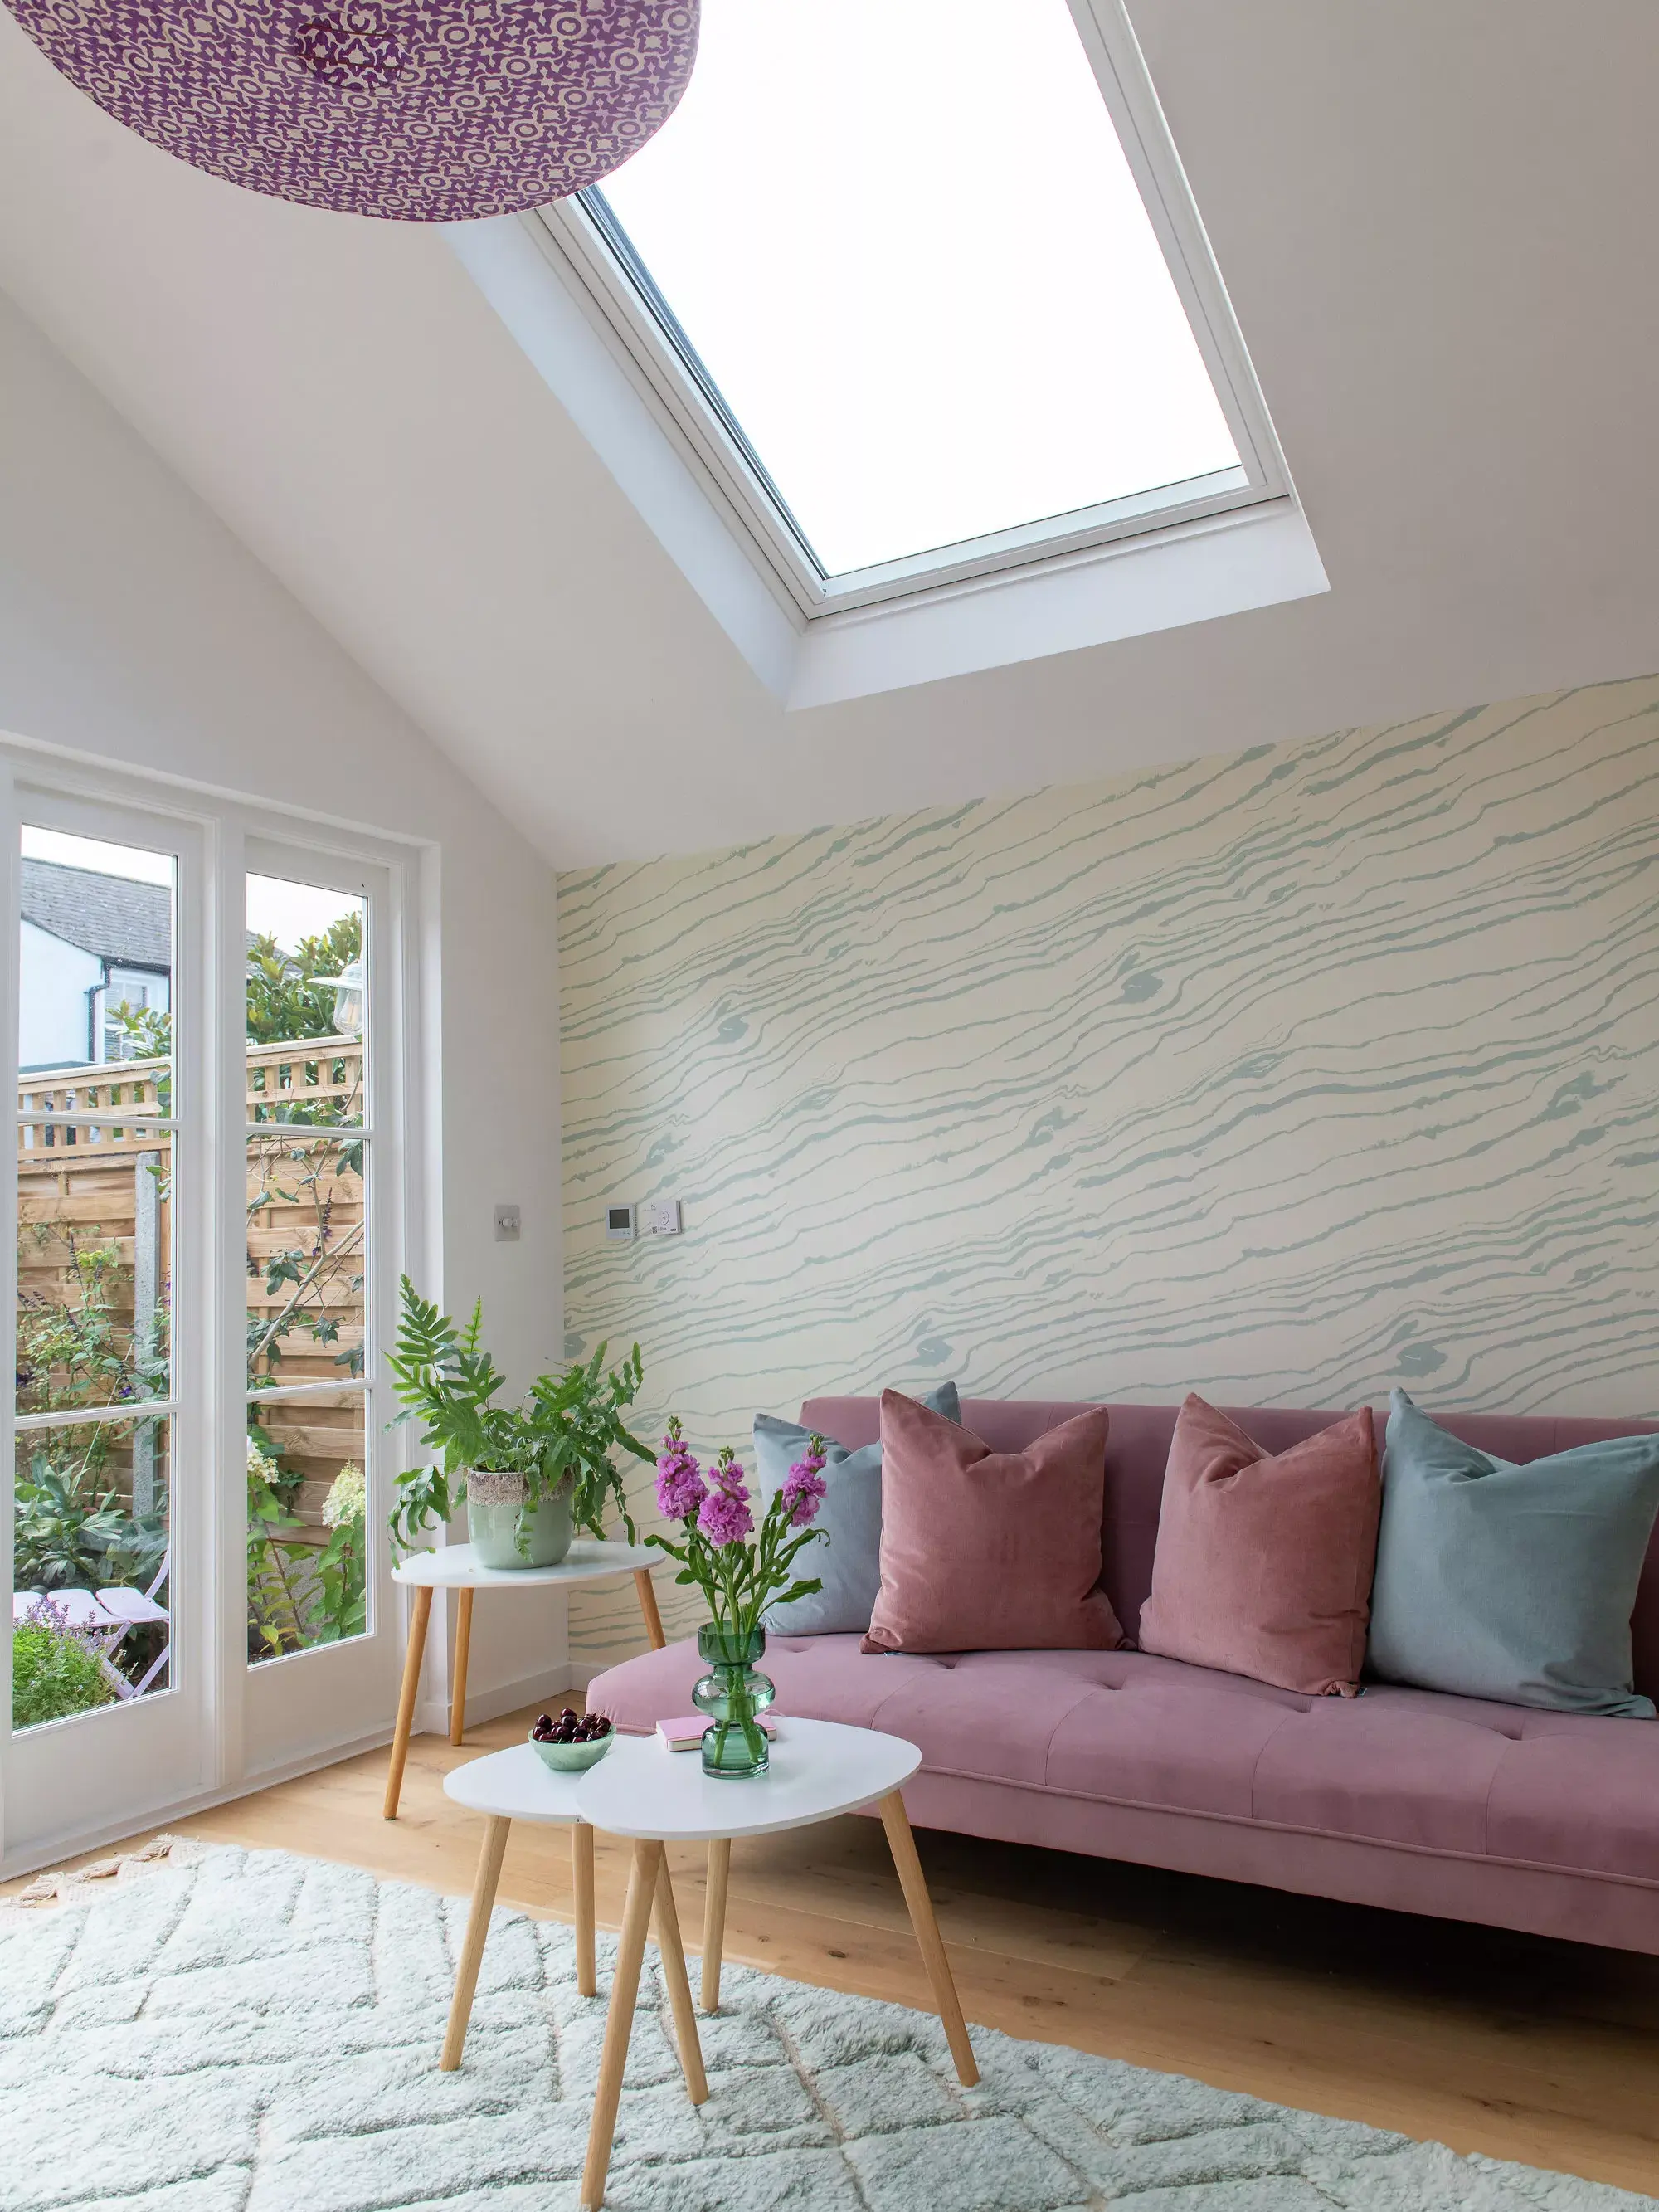 Salon confortable avec lumière naturelle provenant d'une fenêtre de toit VELUX, canapé rose et plantes vertes.